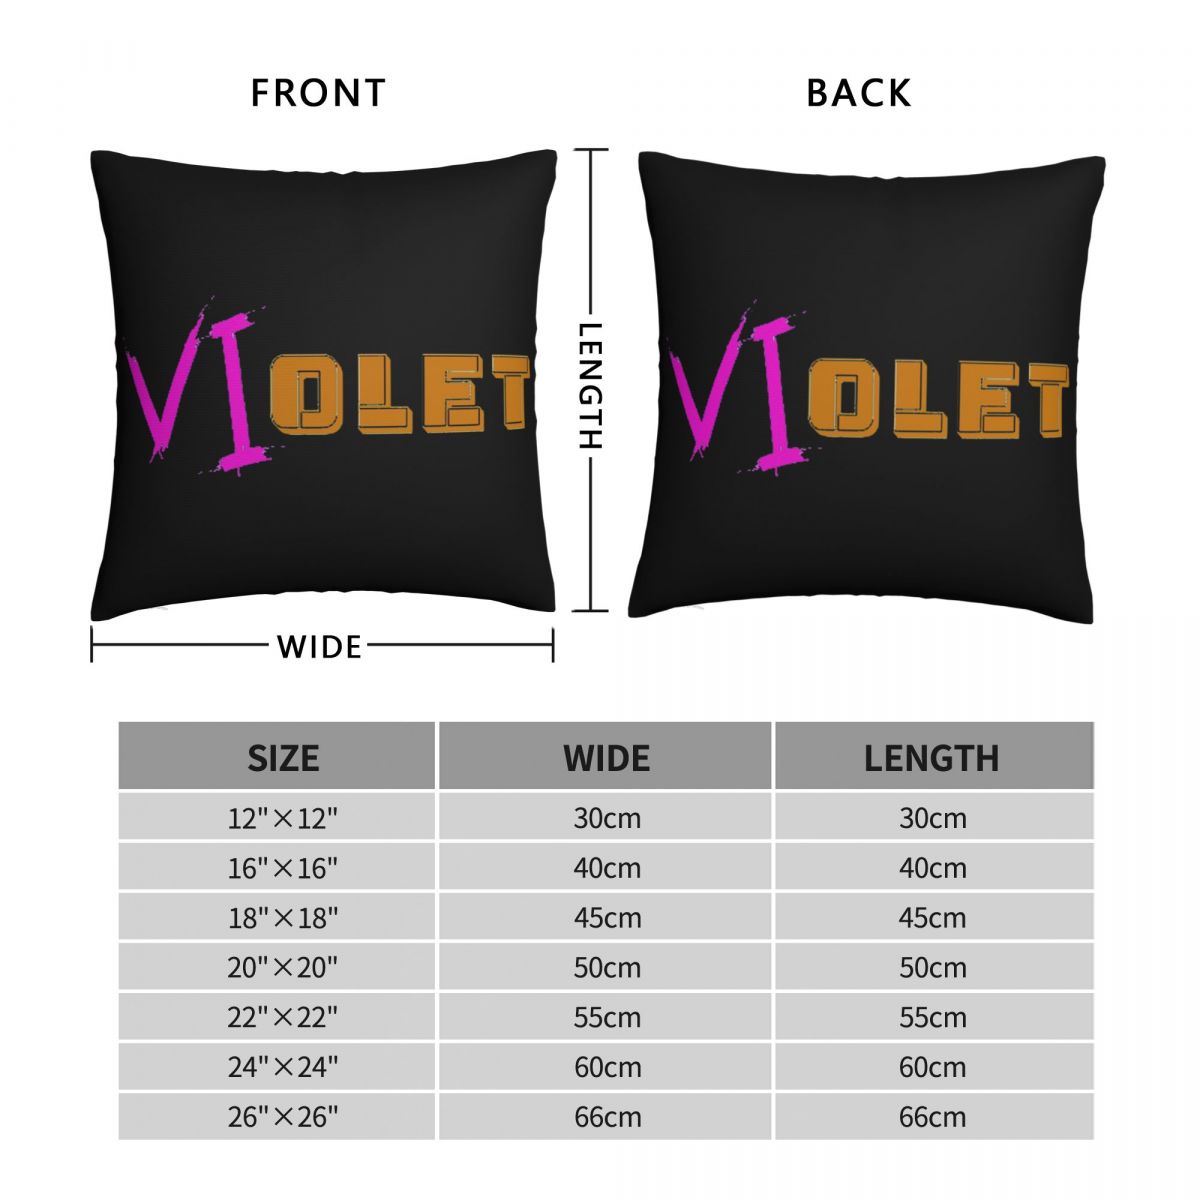 VIolet Throw Pillow Case Arcane - League of Legends Fan Store